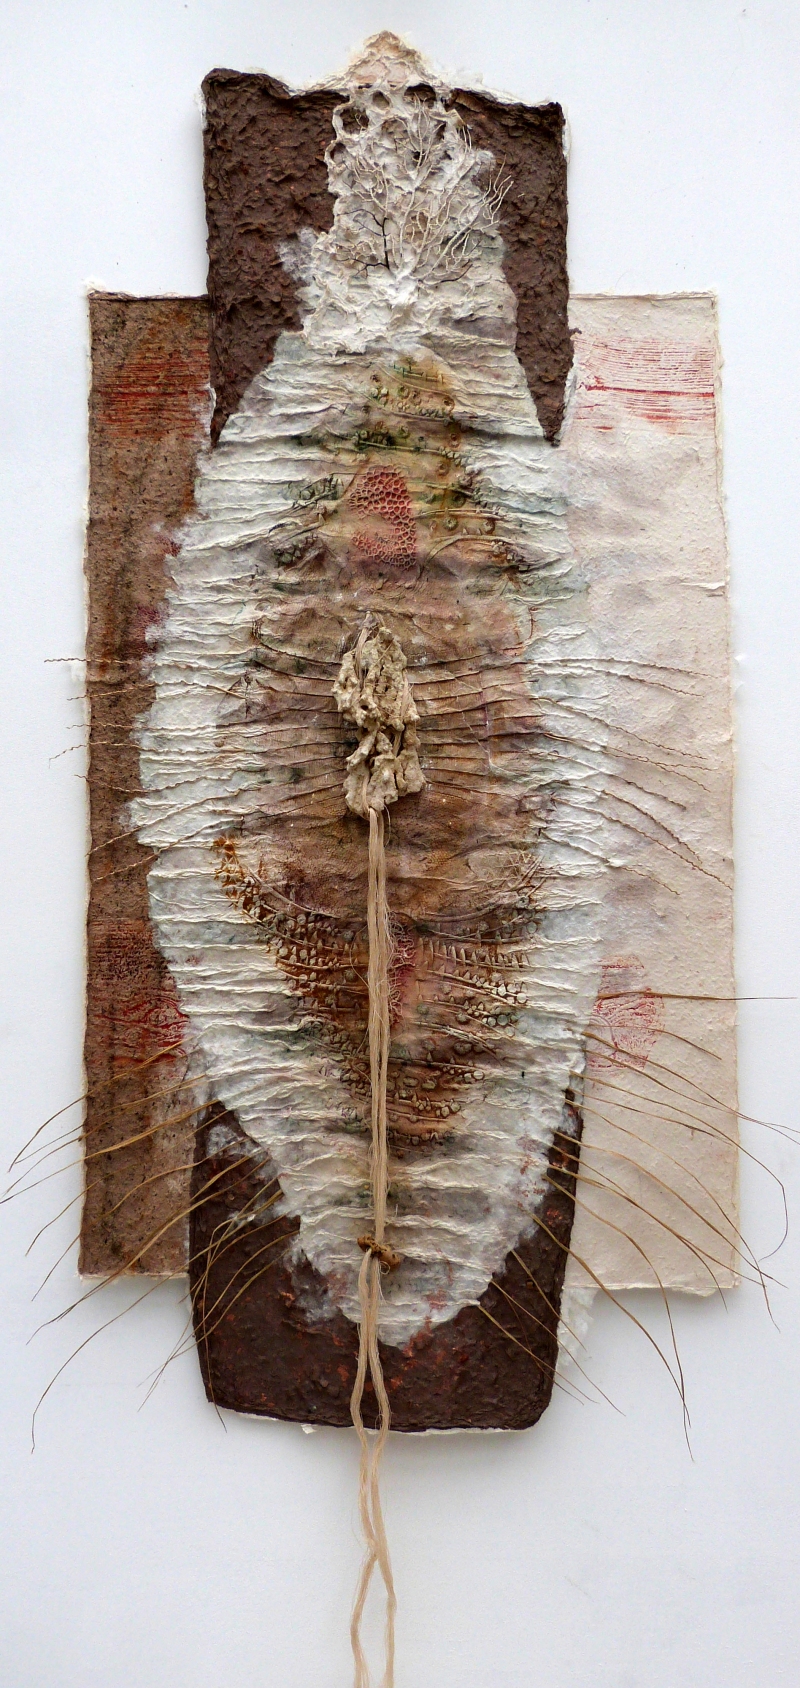 Les figures de la terre 2 - 120 x 60 cm, Dominique Rousseau - Contact